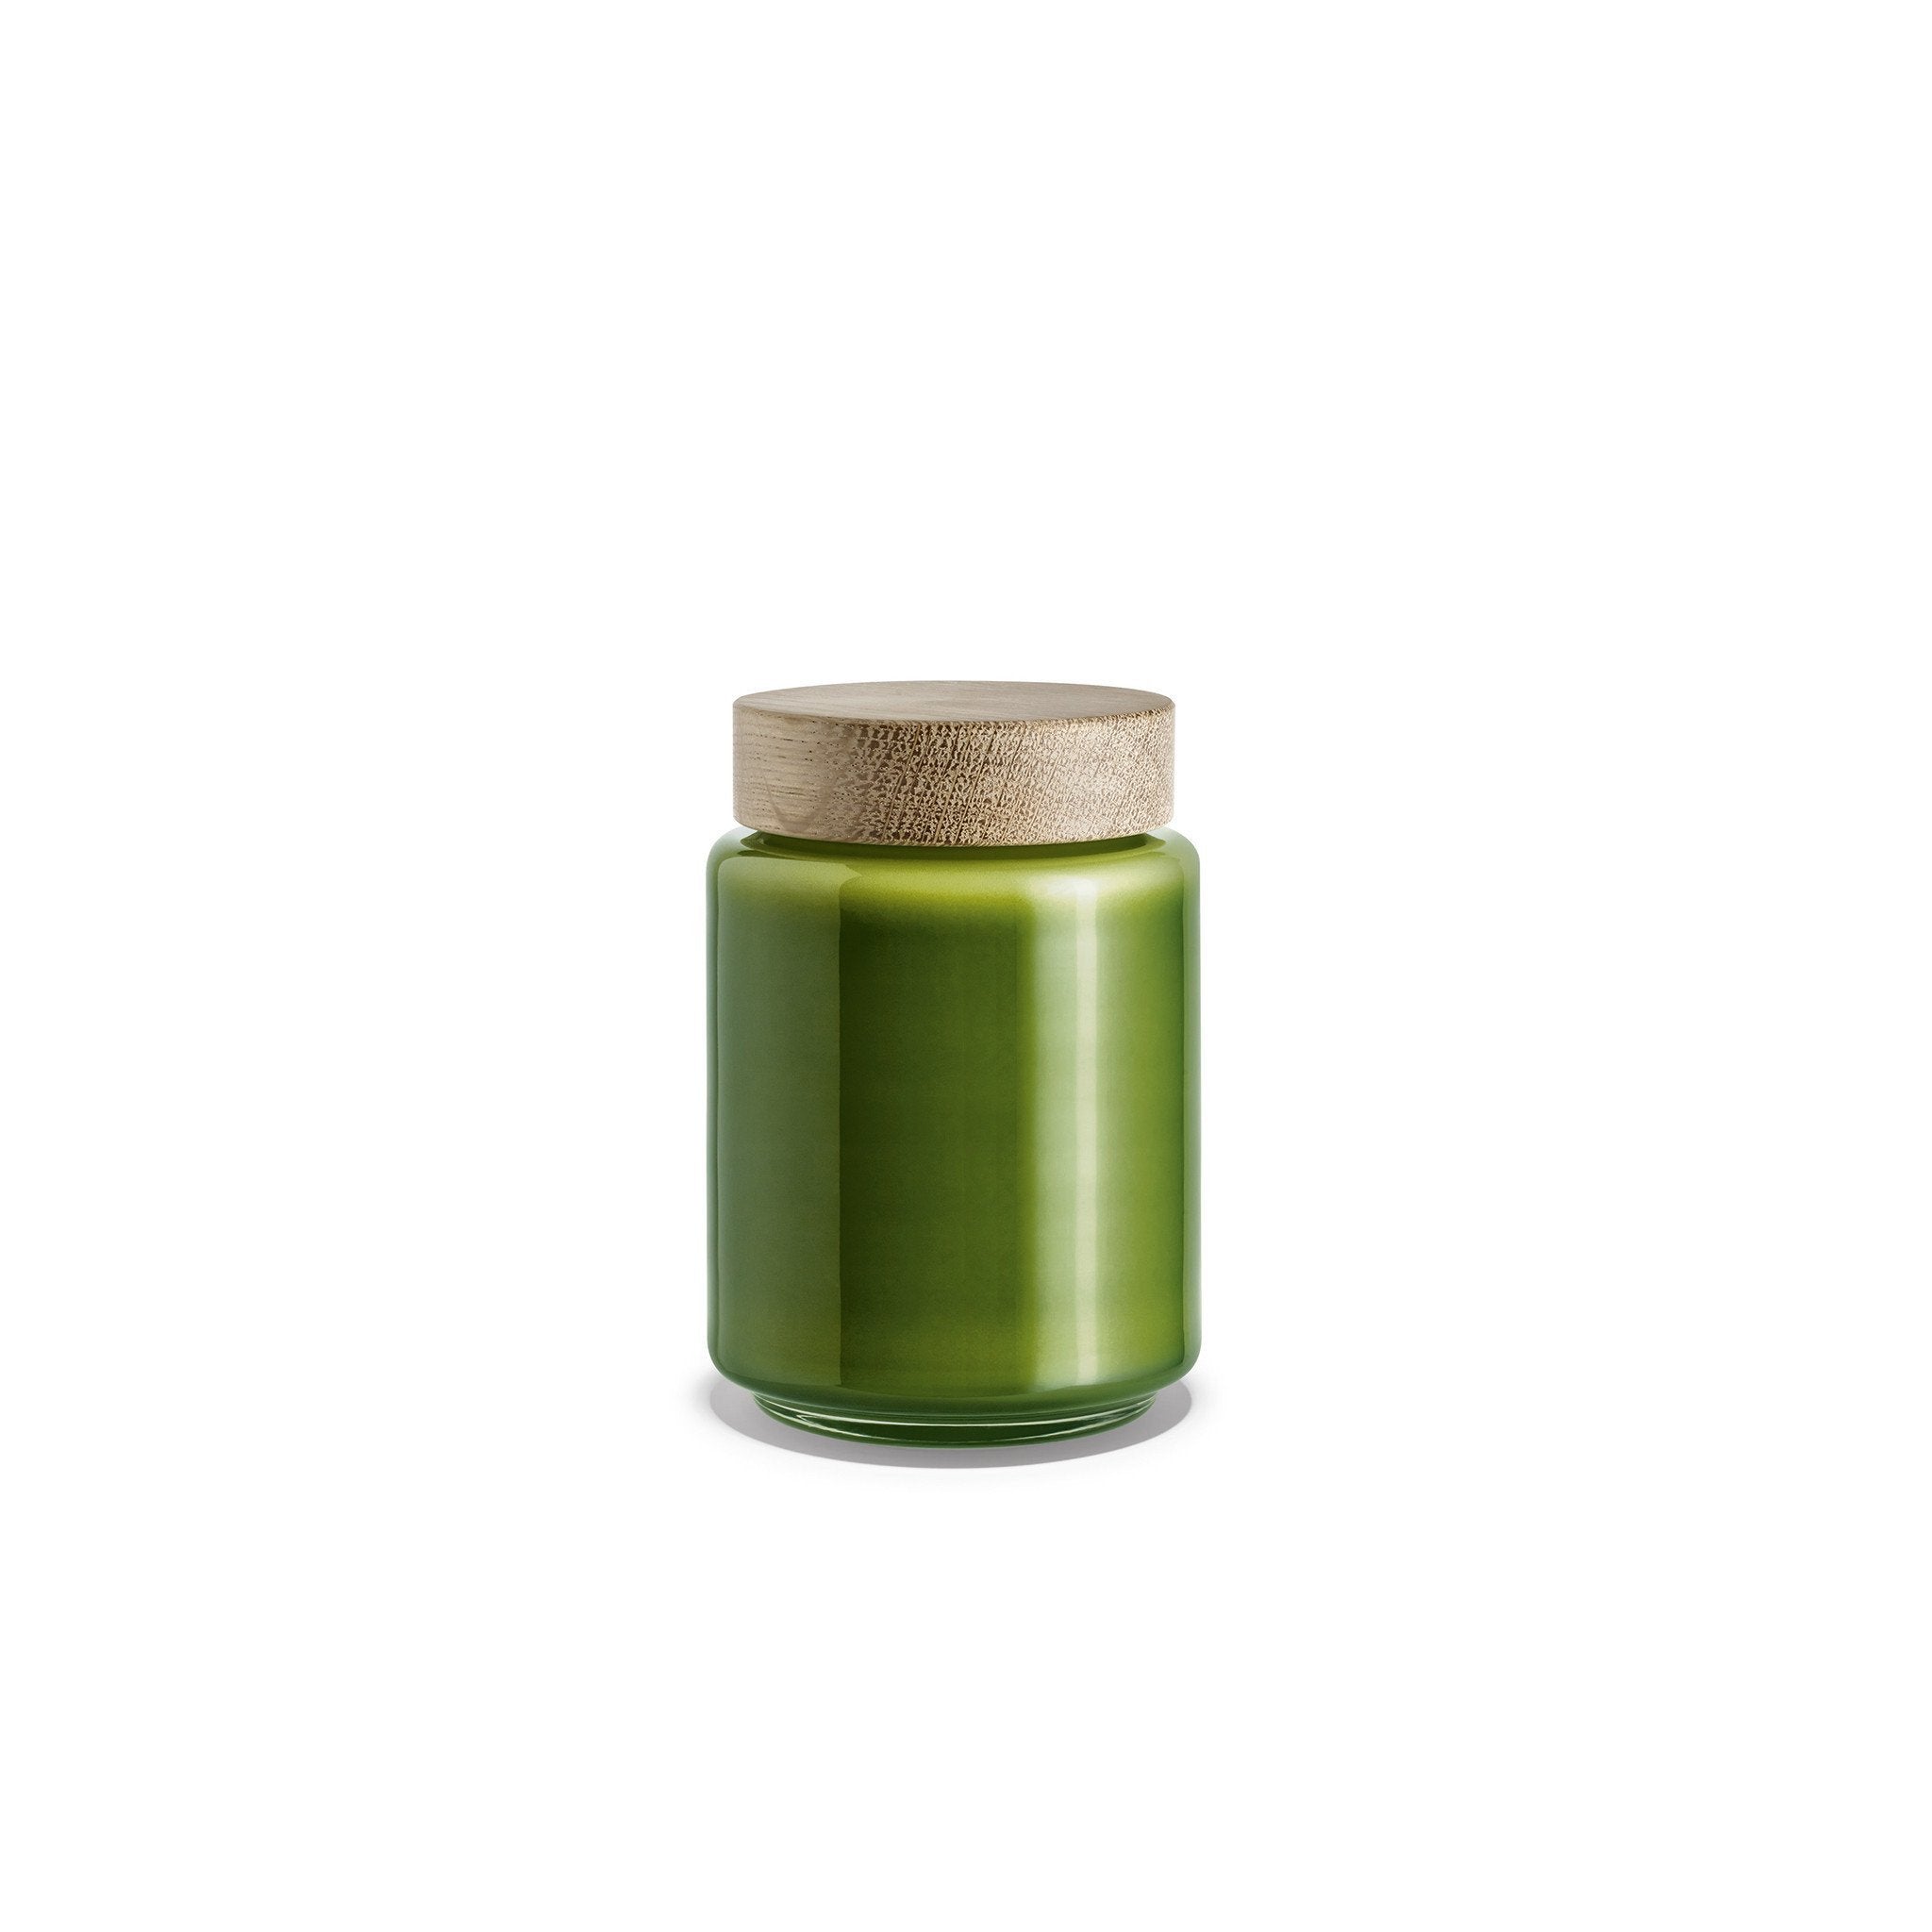 Palet Storage Jar, Green, 0.75 Qt.